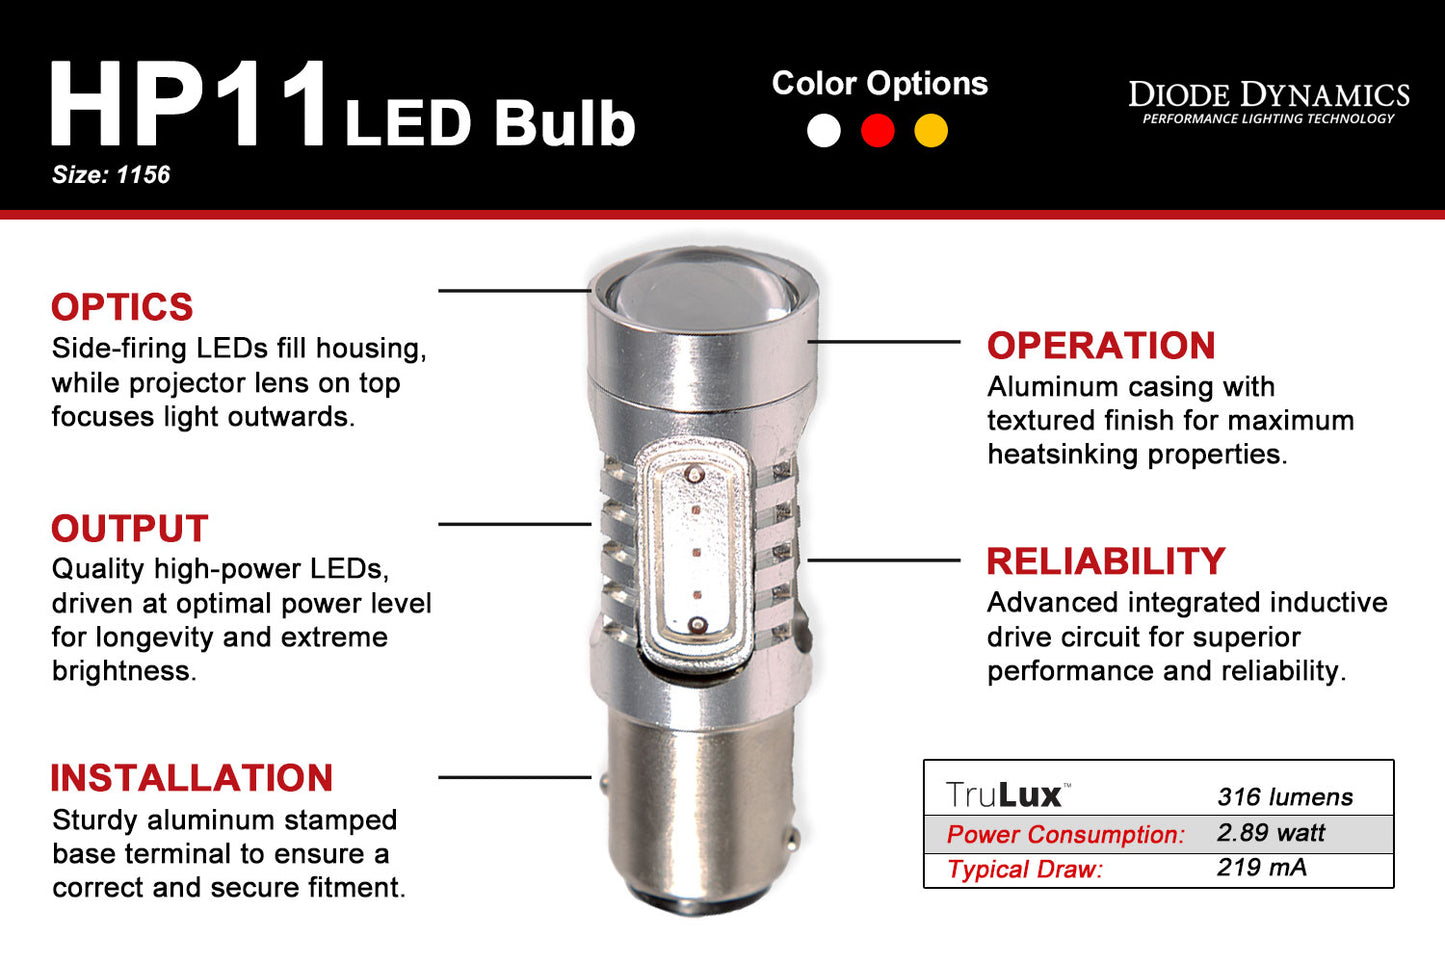 1156 LED Bulb HP11 LED Amber Single Diode Dynamics